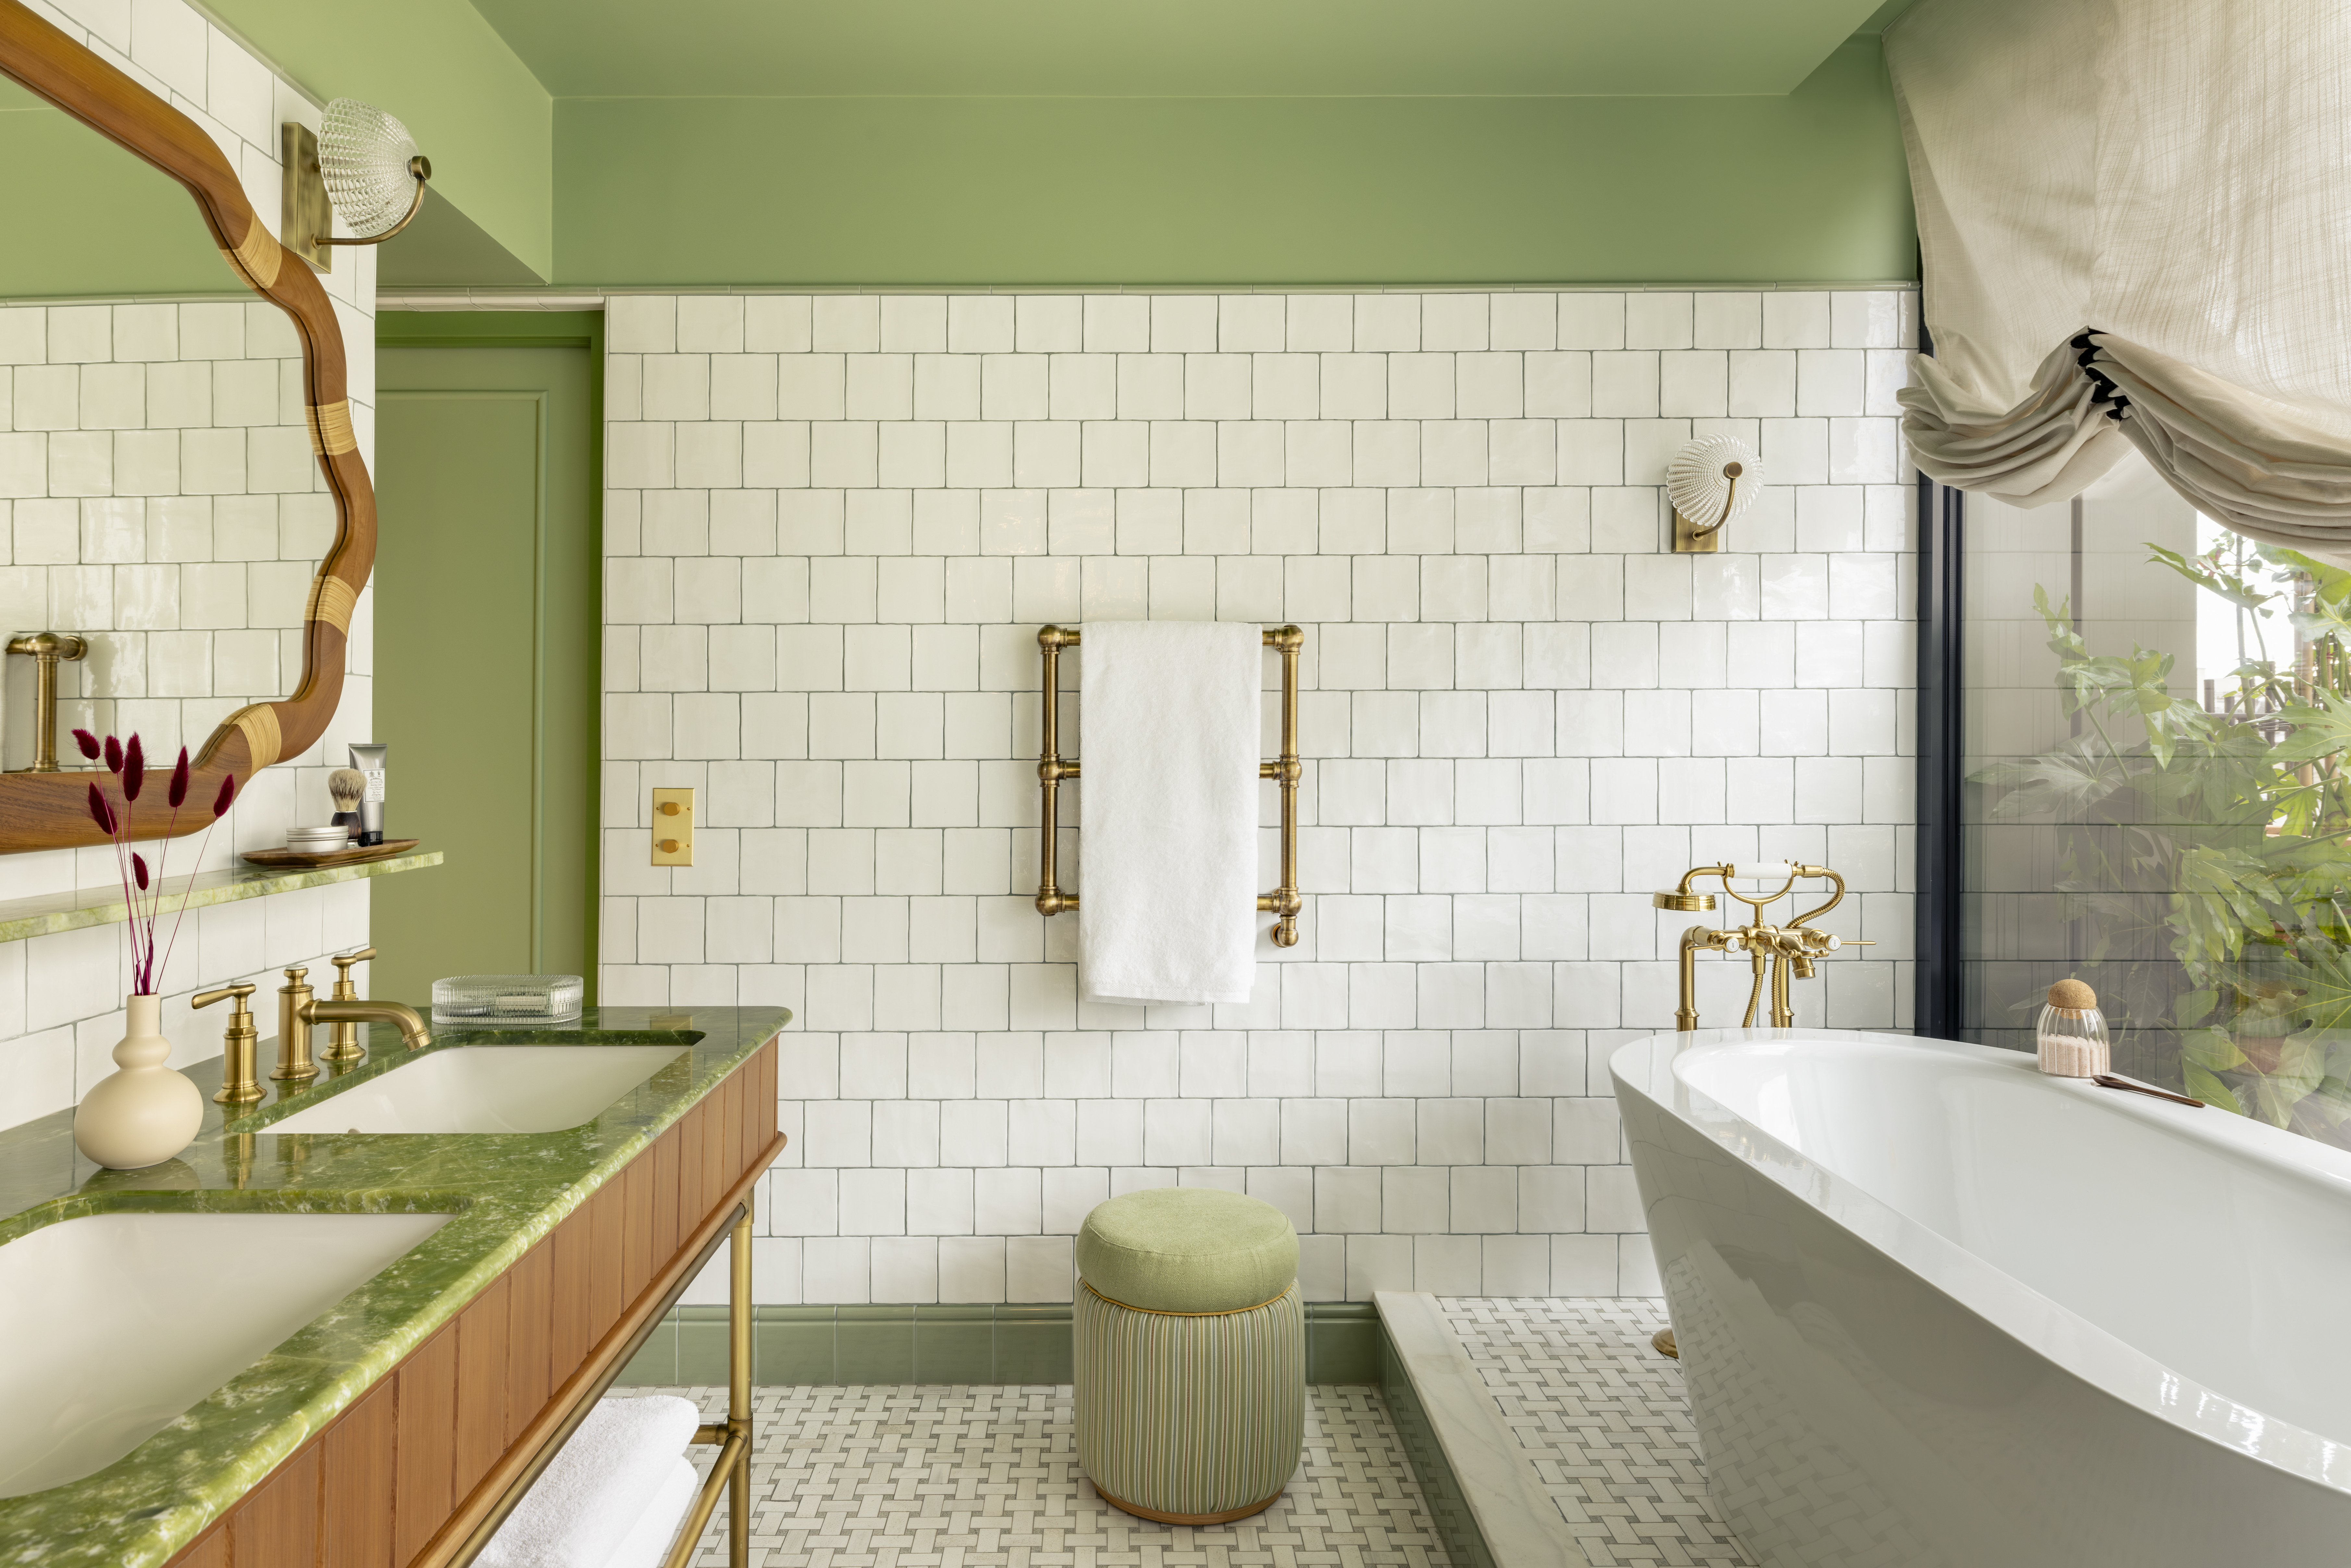 Banheiro com parede verde, parede revestida de ladrilhos brancos e banheira solta.